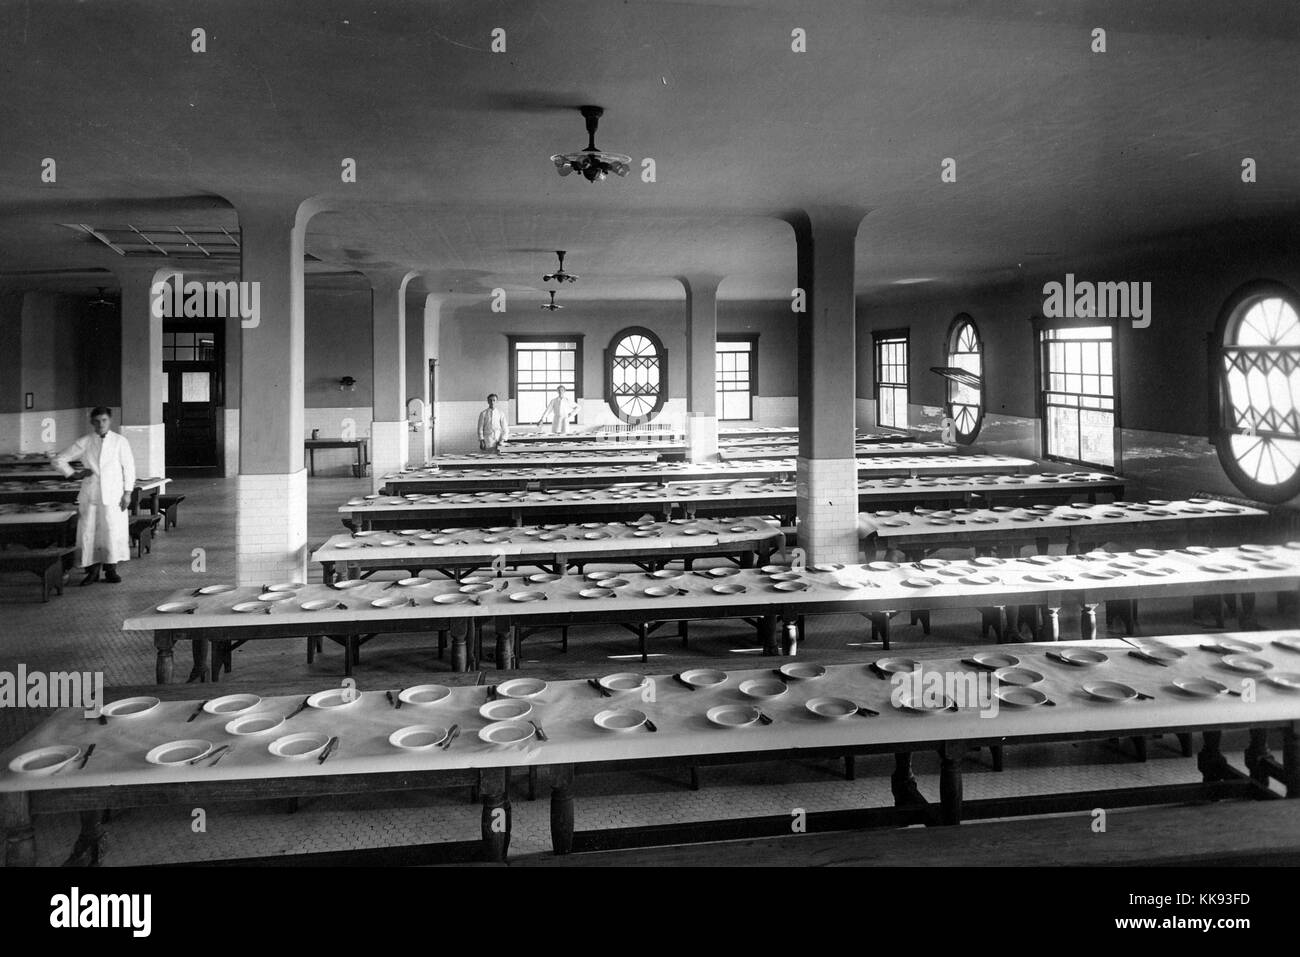 Schwarz-weiß Foto von der Speisesaal auf Ellis Island, Teller und Besteck, die an langen Tischen, von Edwin Levick, Ellis Island, New York, 1907. Von der New York Public Library. Stockfoto